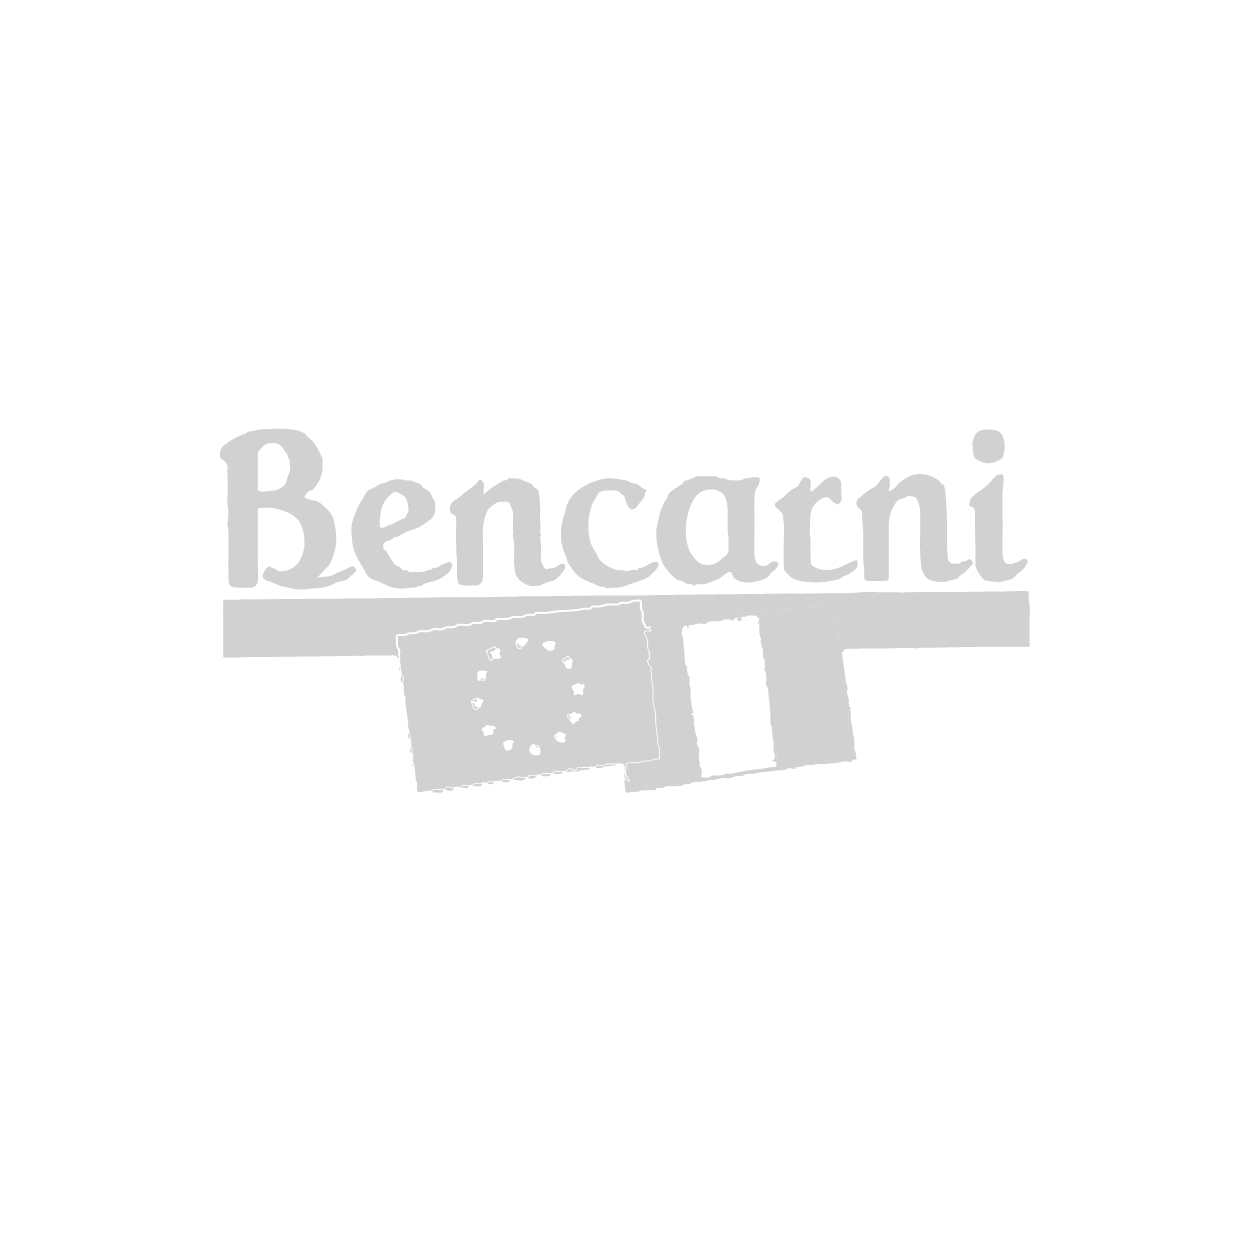 Bencarni